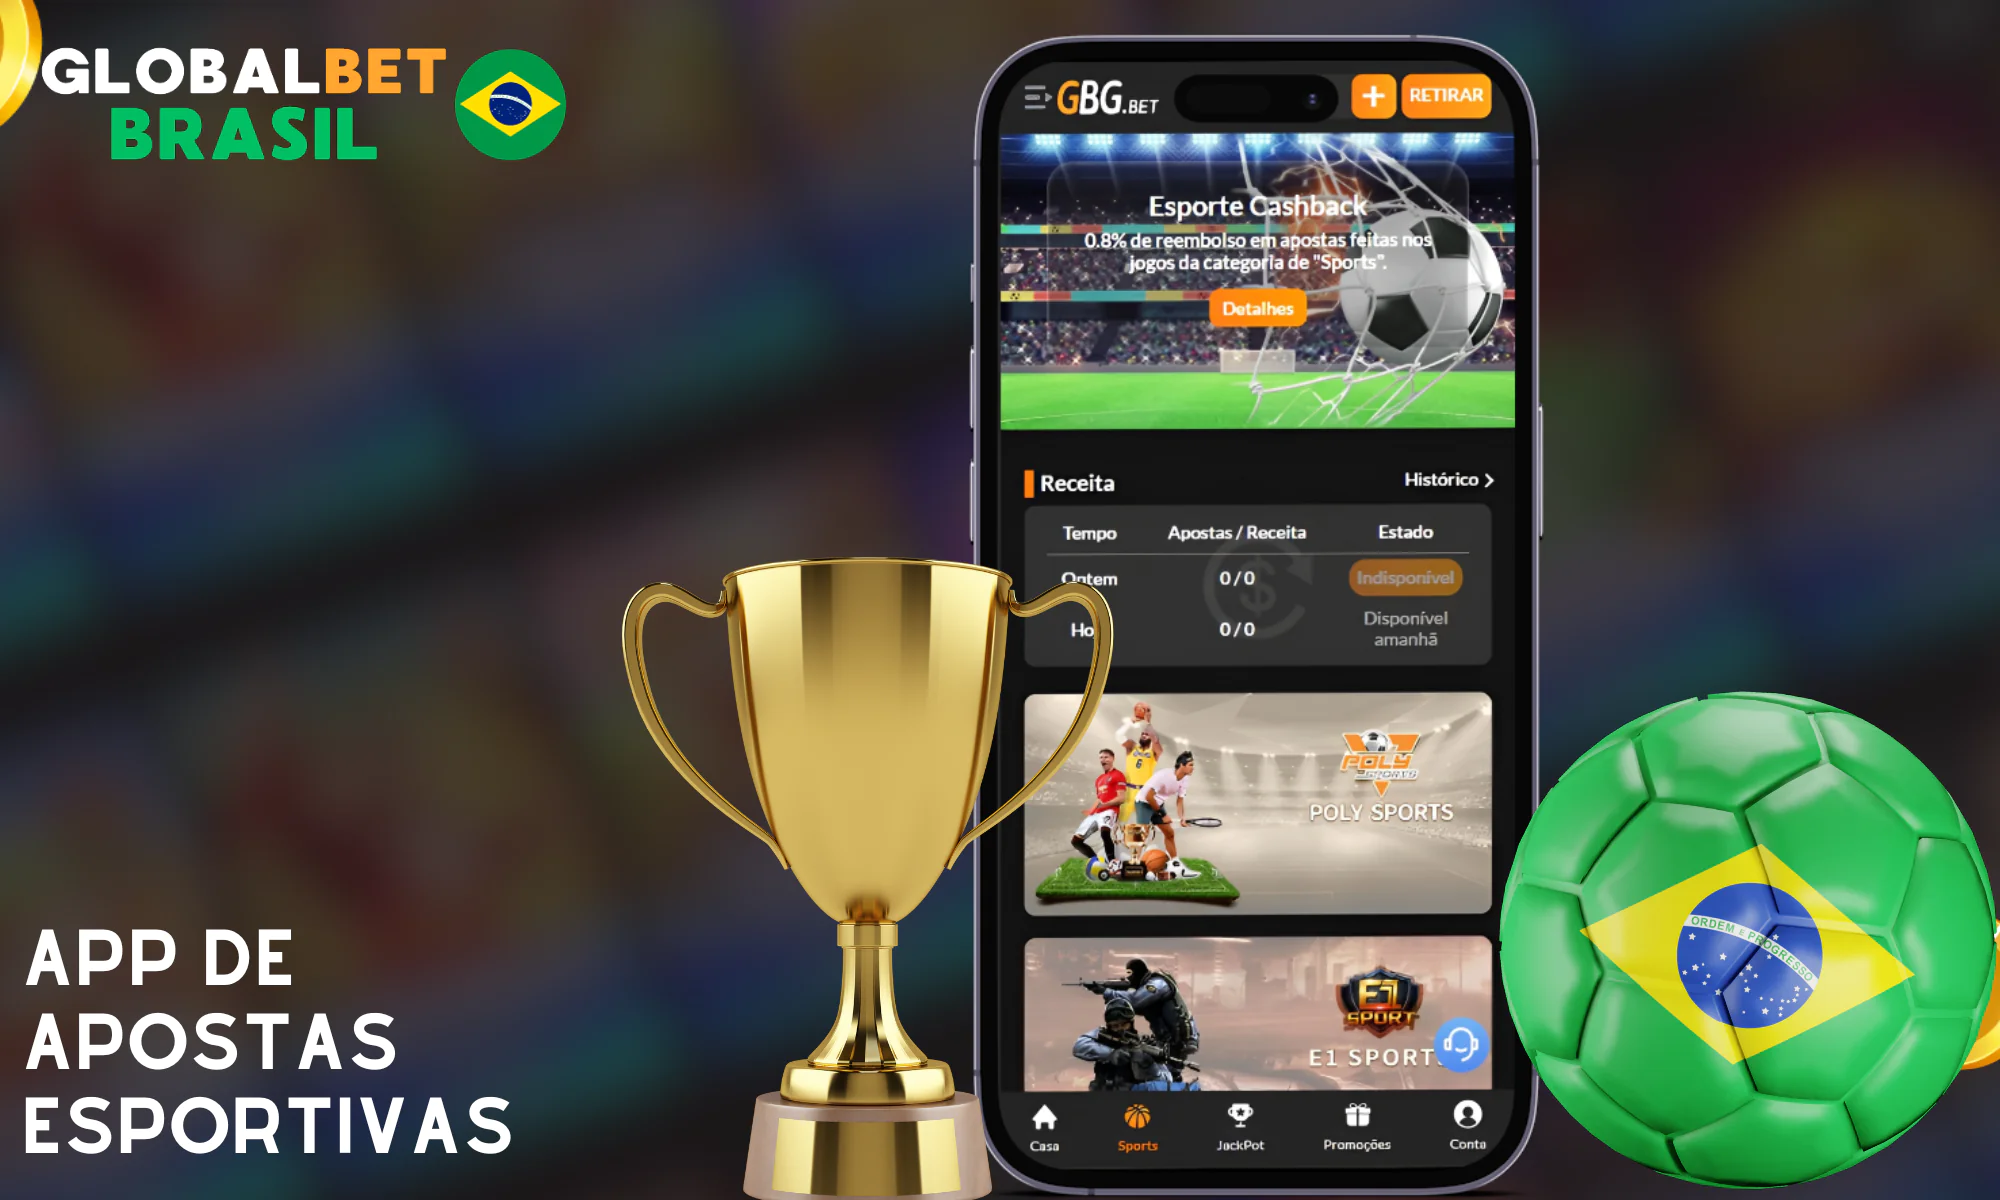 O aplicativo da Globalbet tem uma seção especial para apostas esportivas